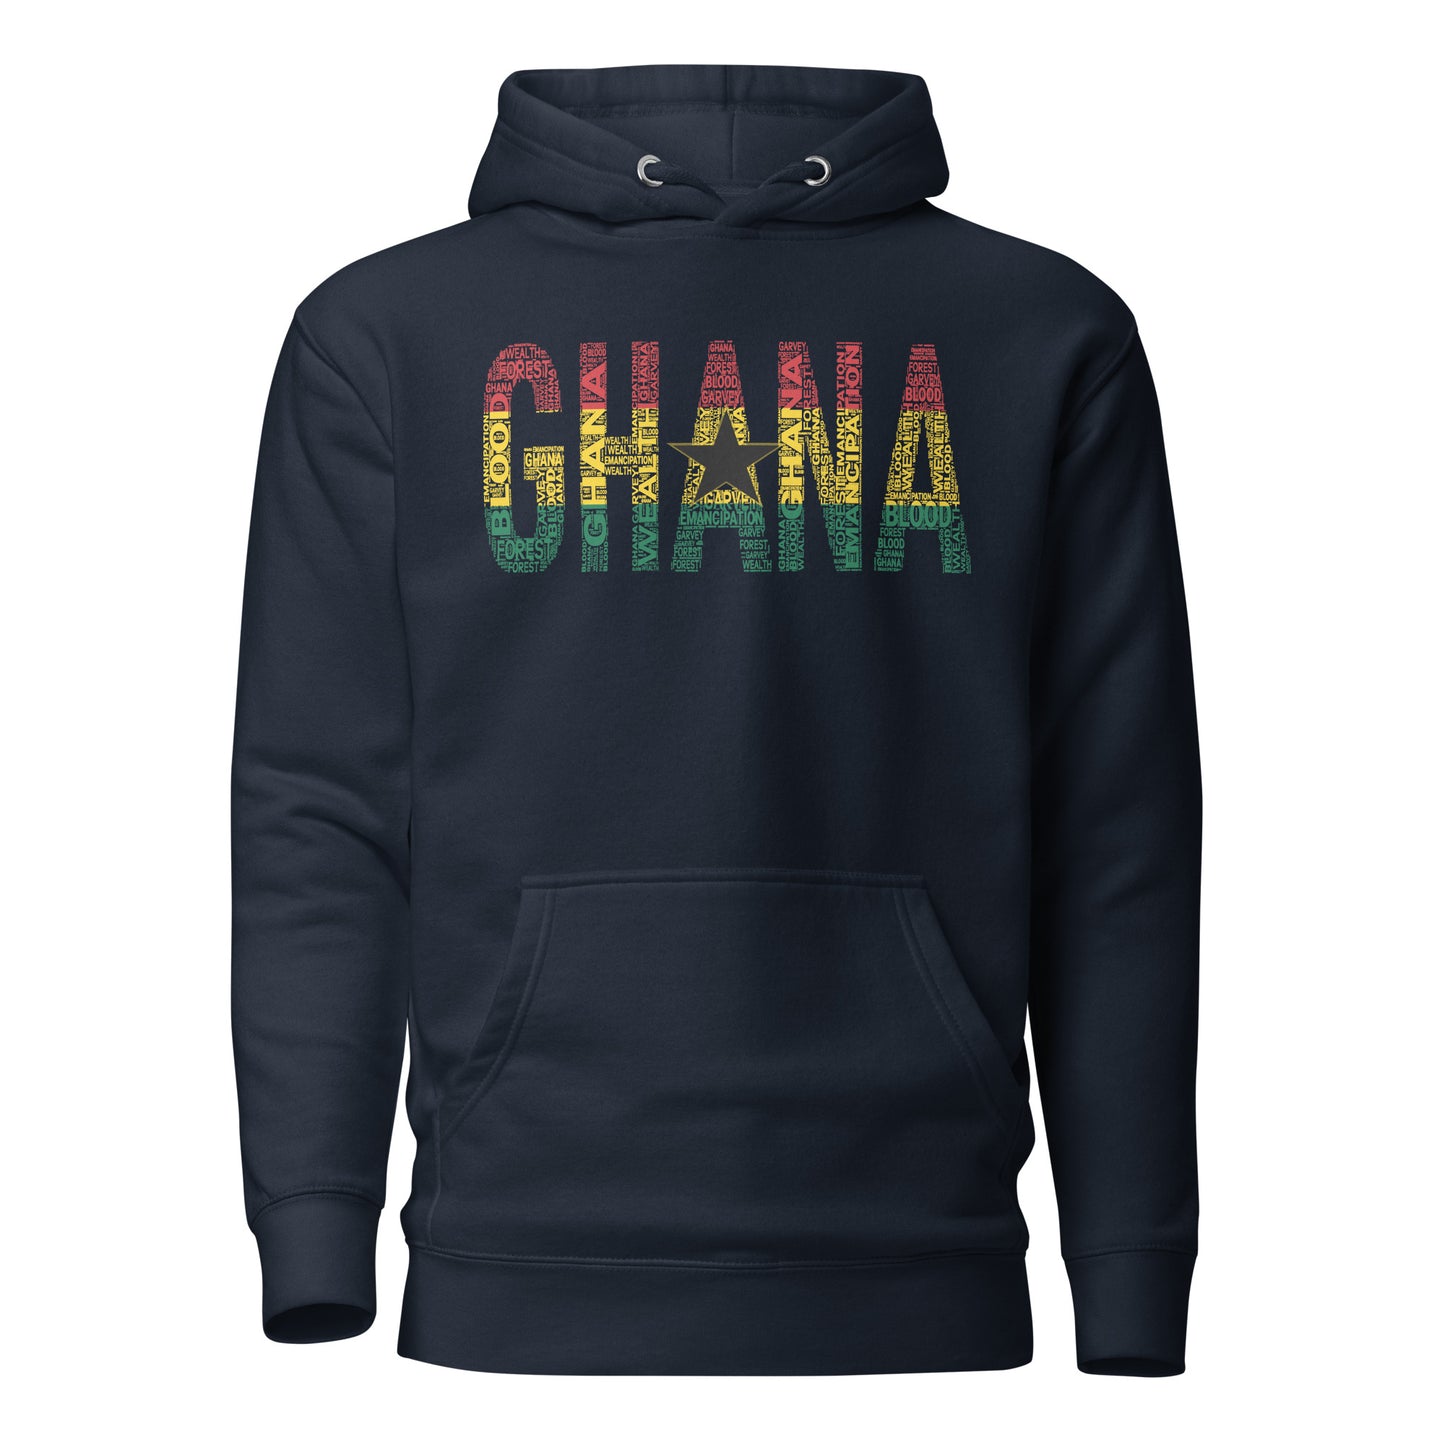 GHANA National Flag Inspired Word Cluster Unisex Hoodie